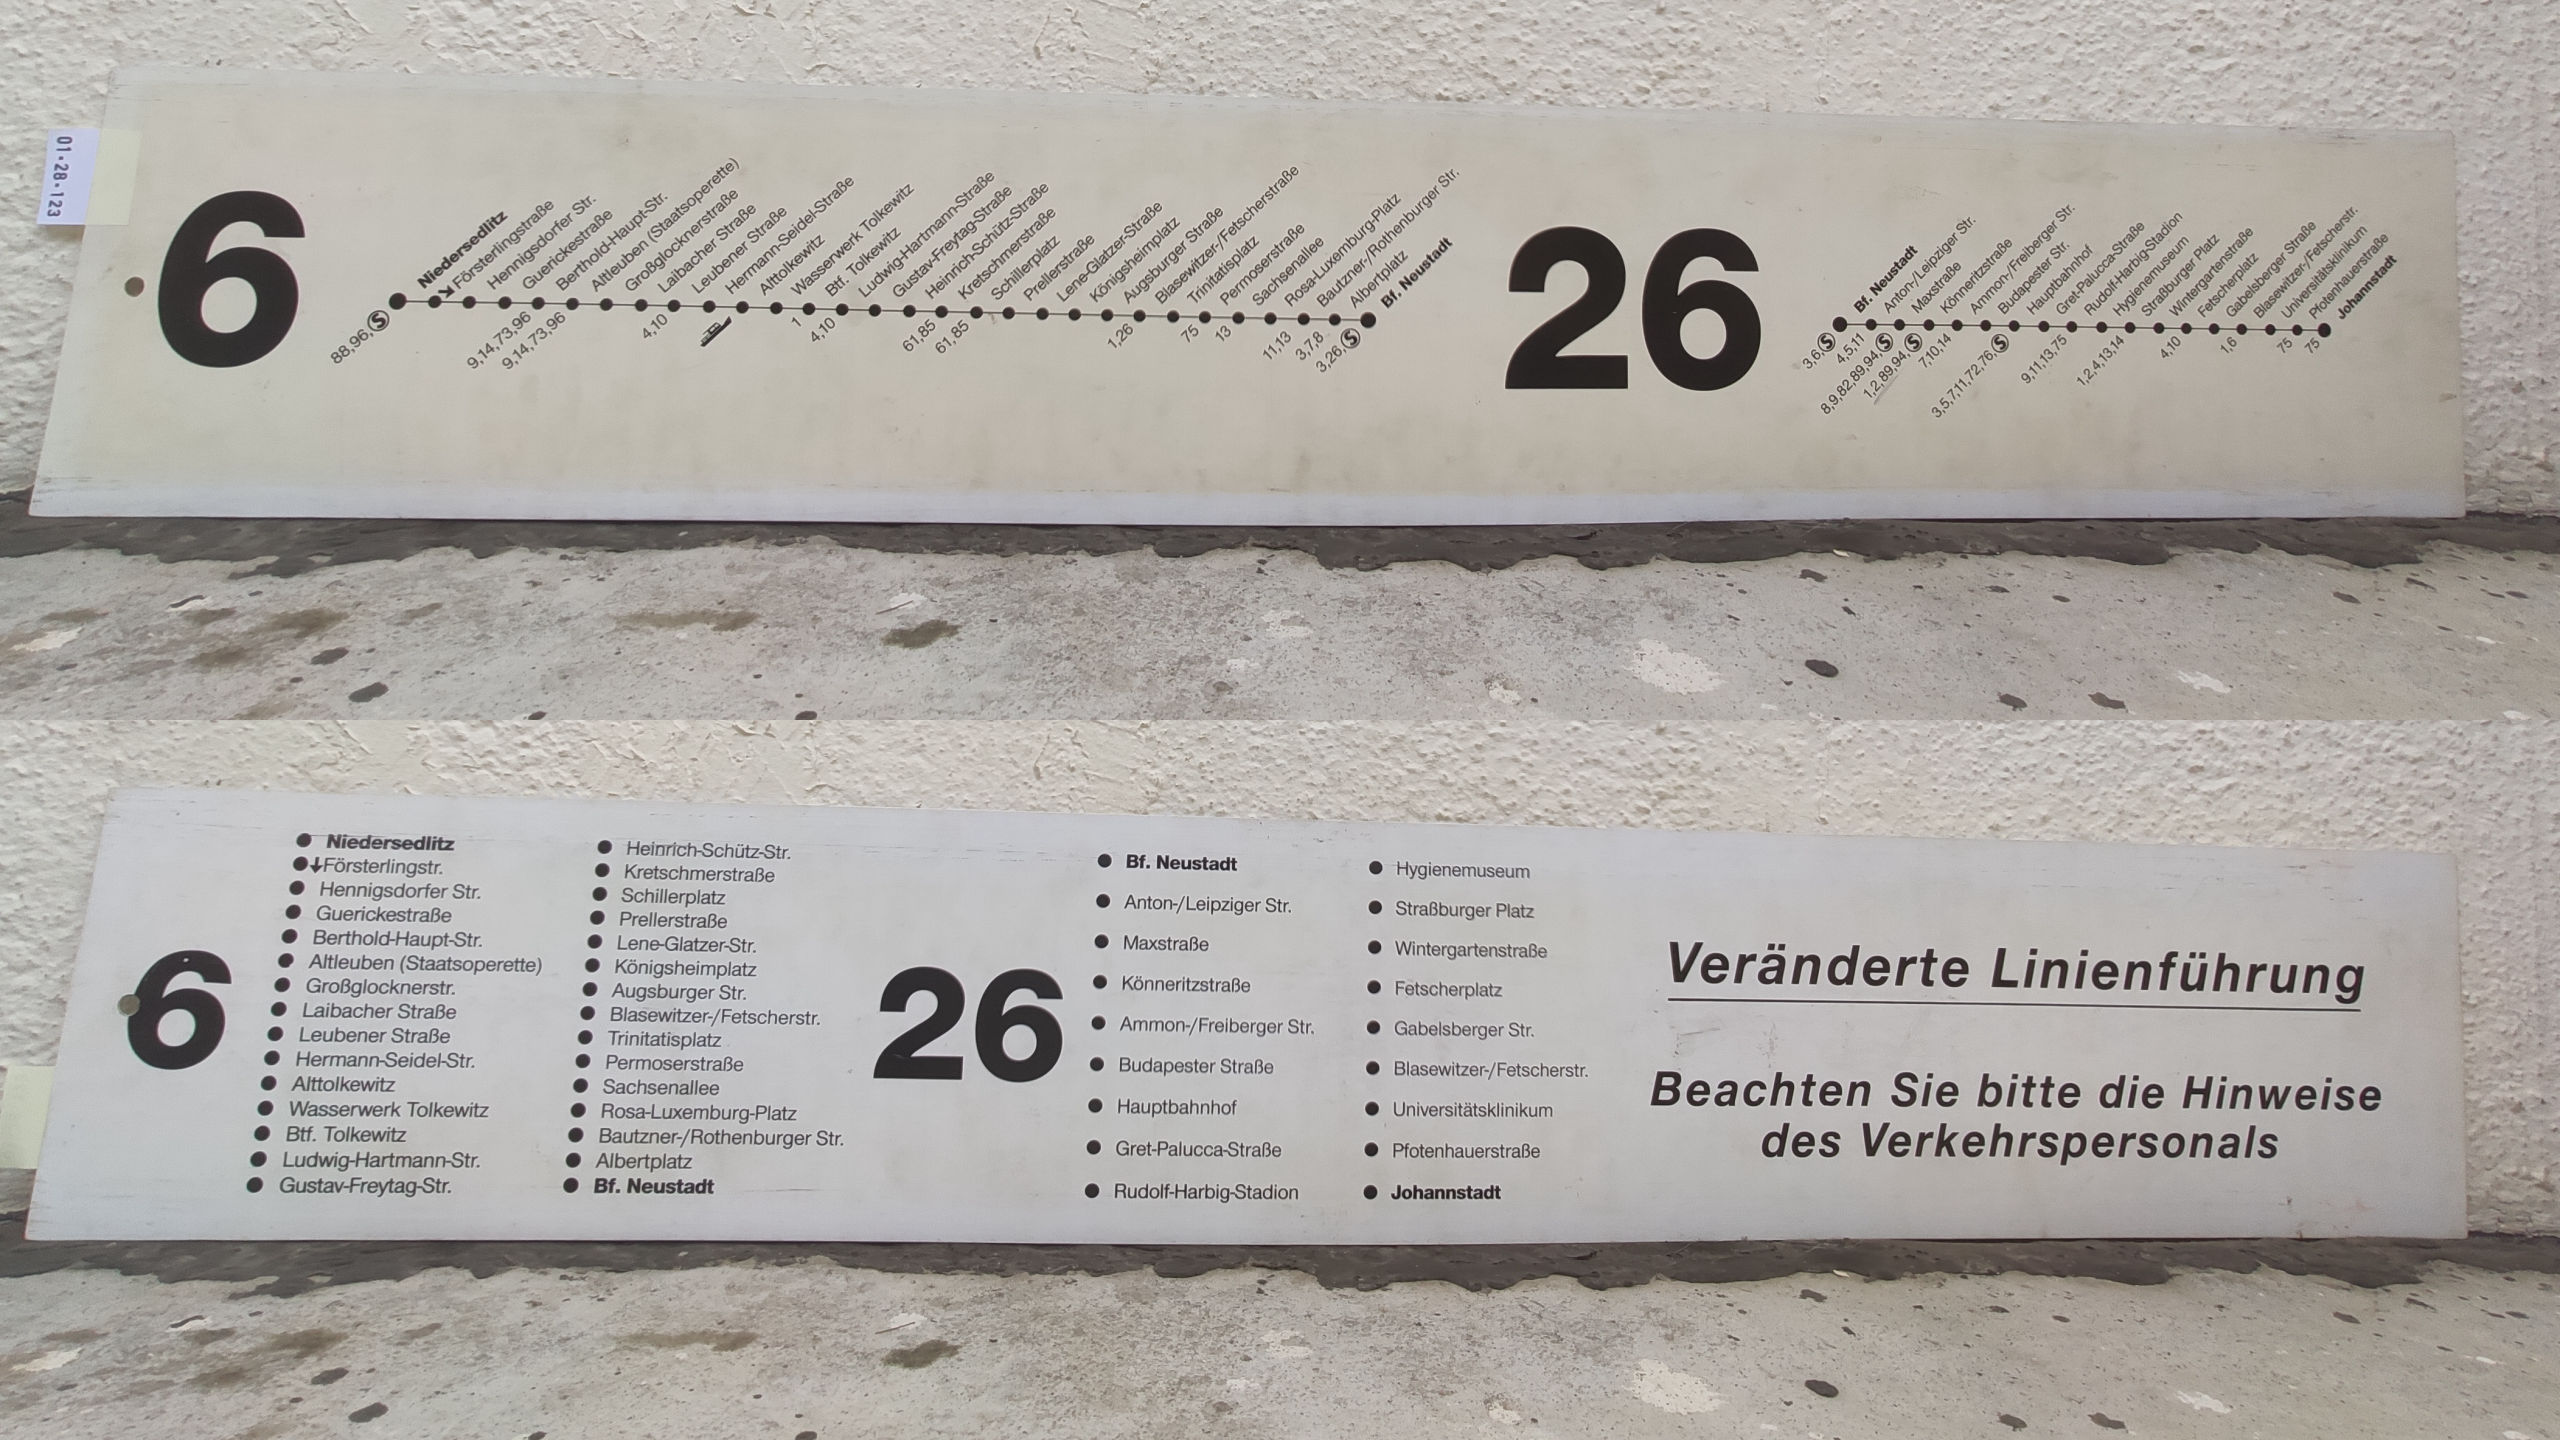 6 Niedersedlitz – Bf. Neustadt 26 Bf. Neustadt – Johannstadt